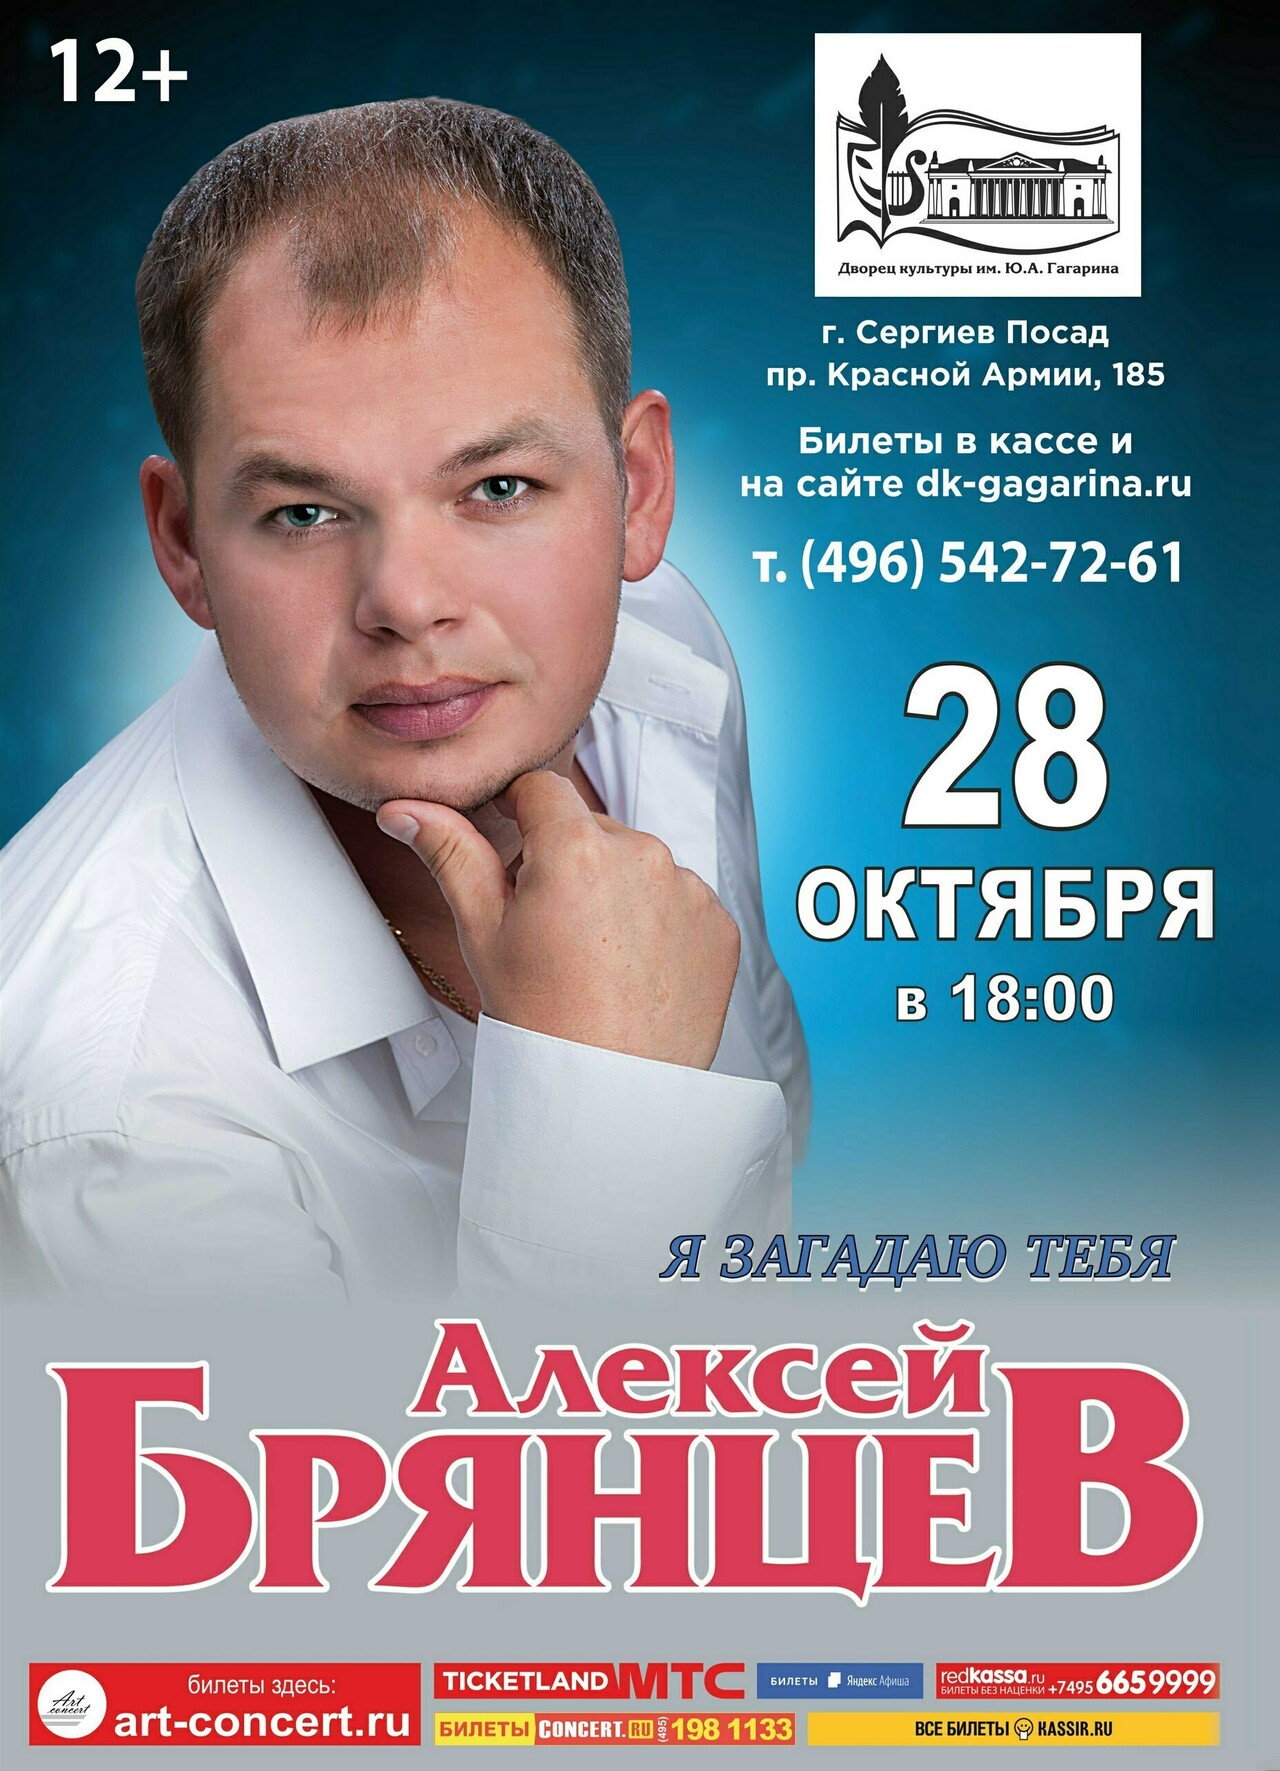 Купить билеты на концерт алексея брянцева. Концерт Алексея Брянцева. Дворец культуры категория.